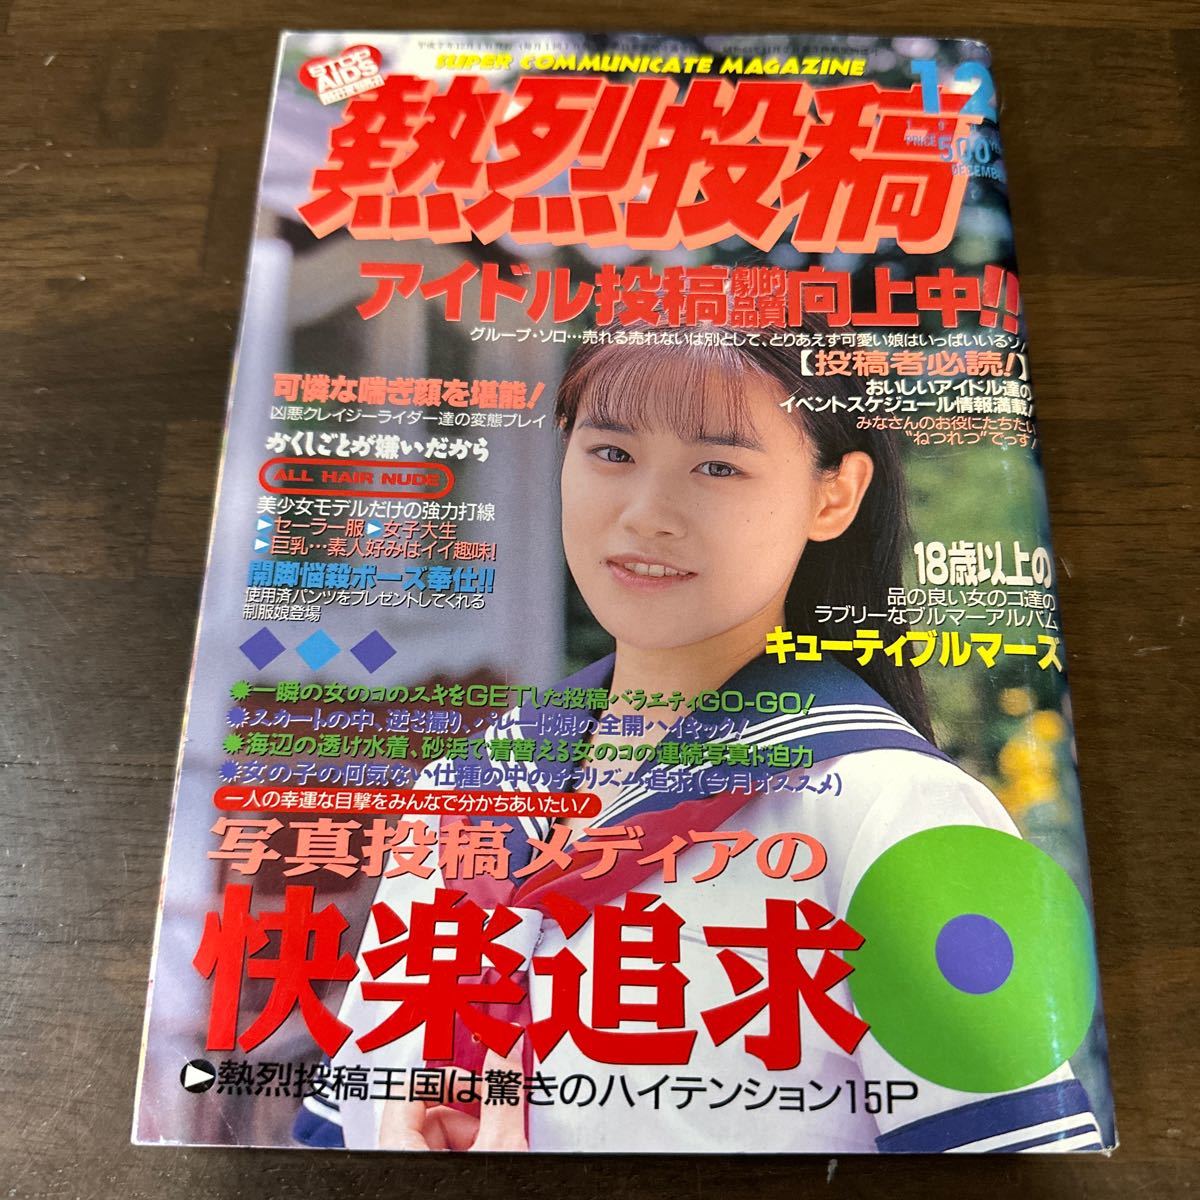 フィフティーンクラブ vol.4 15CLUB 熱烈投稿9月号増刊 小田島樹里 